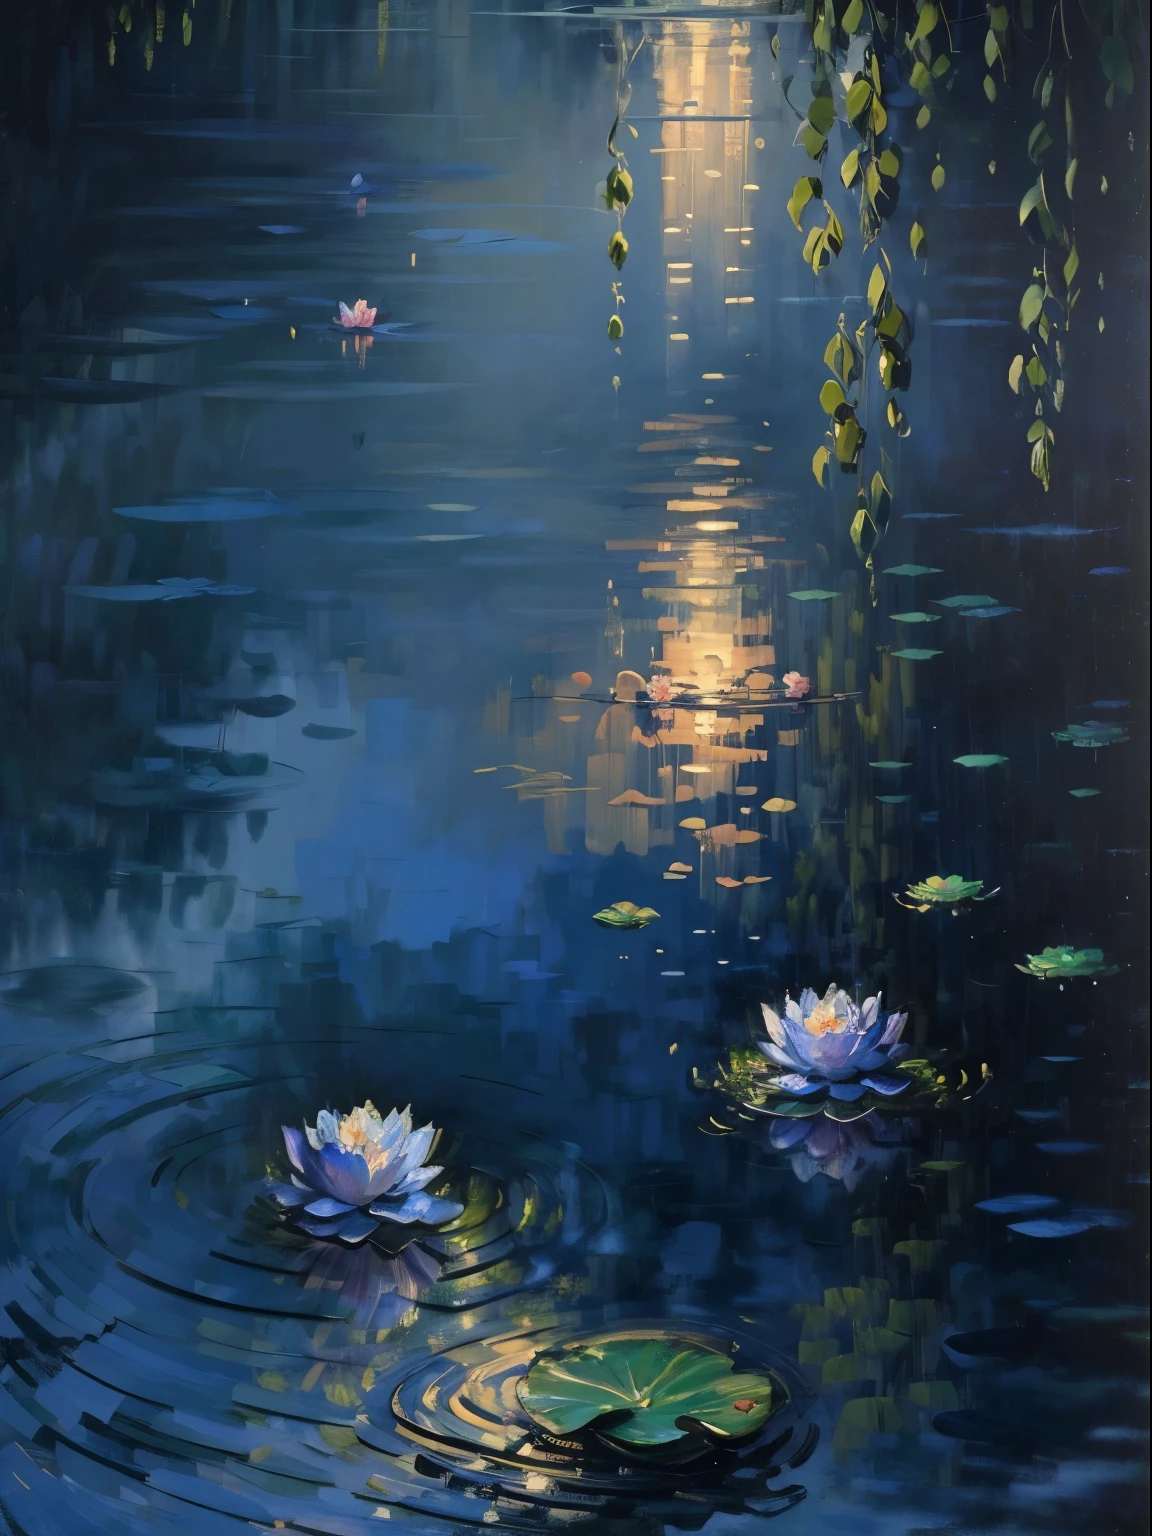 モネの油絵，(最高品質,4K,8k,高解像度,傑作:1.2),非常に詳細,現実的,美しい月明かりの蓮池,平和な雰囲気,静かな水面に映る,青々とした蓮の葉,香りの良い蓮の花が咲く,詳細な水の波紋,蓮栽培者のシルエット,穏やかな夜風,静かな雰囲気,柔らかな月明かりがその光景を照らした.,光と影の微妙な遊び,ミッドナイトブルーとシルバーの調和のとれた色,印象派の絵画スタイル,静かな自然の美しさ,詩的でノスタルジック,ロマンチックな雰囲気,月明かりの静寂の美しさ,幻想的で夢のような,月明かりに照らされた繊細な花びら,優しく優雅な,蓮の花が咲く.